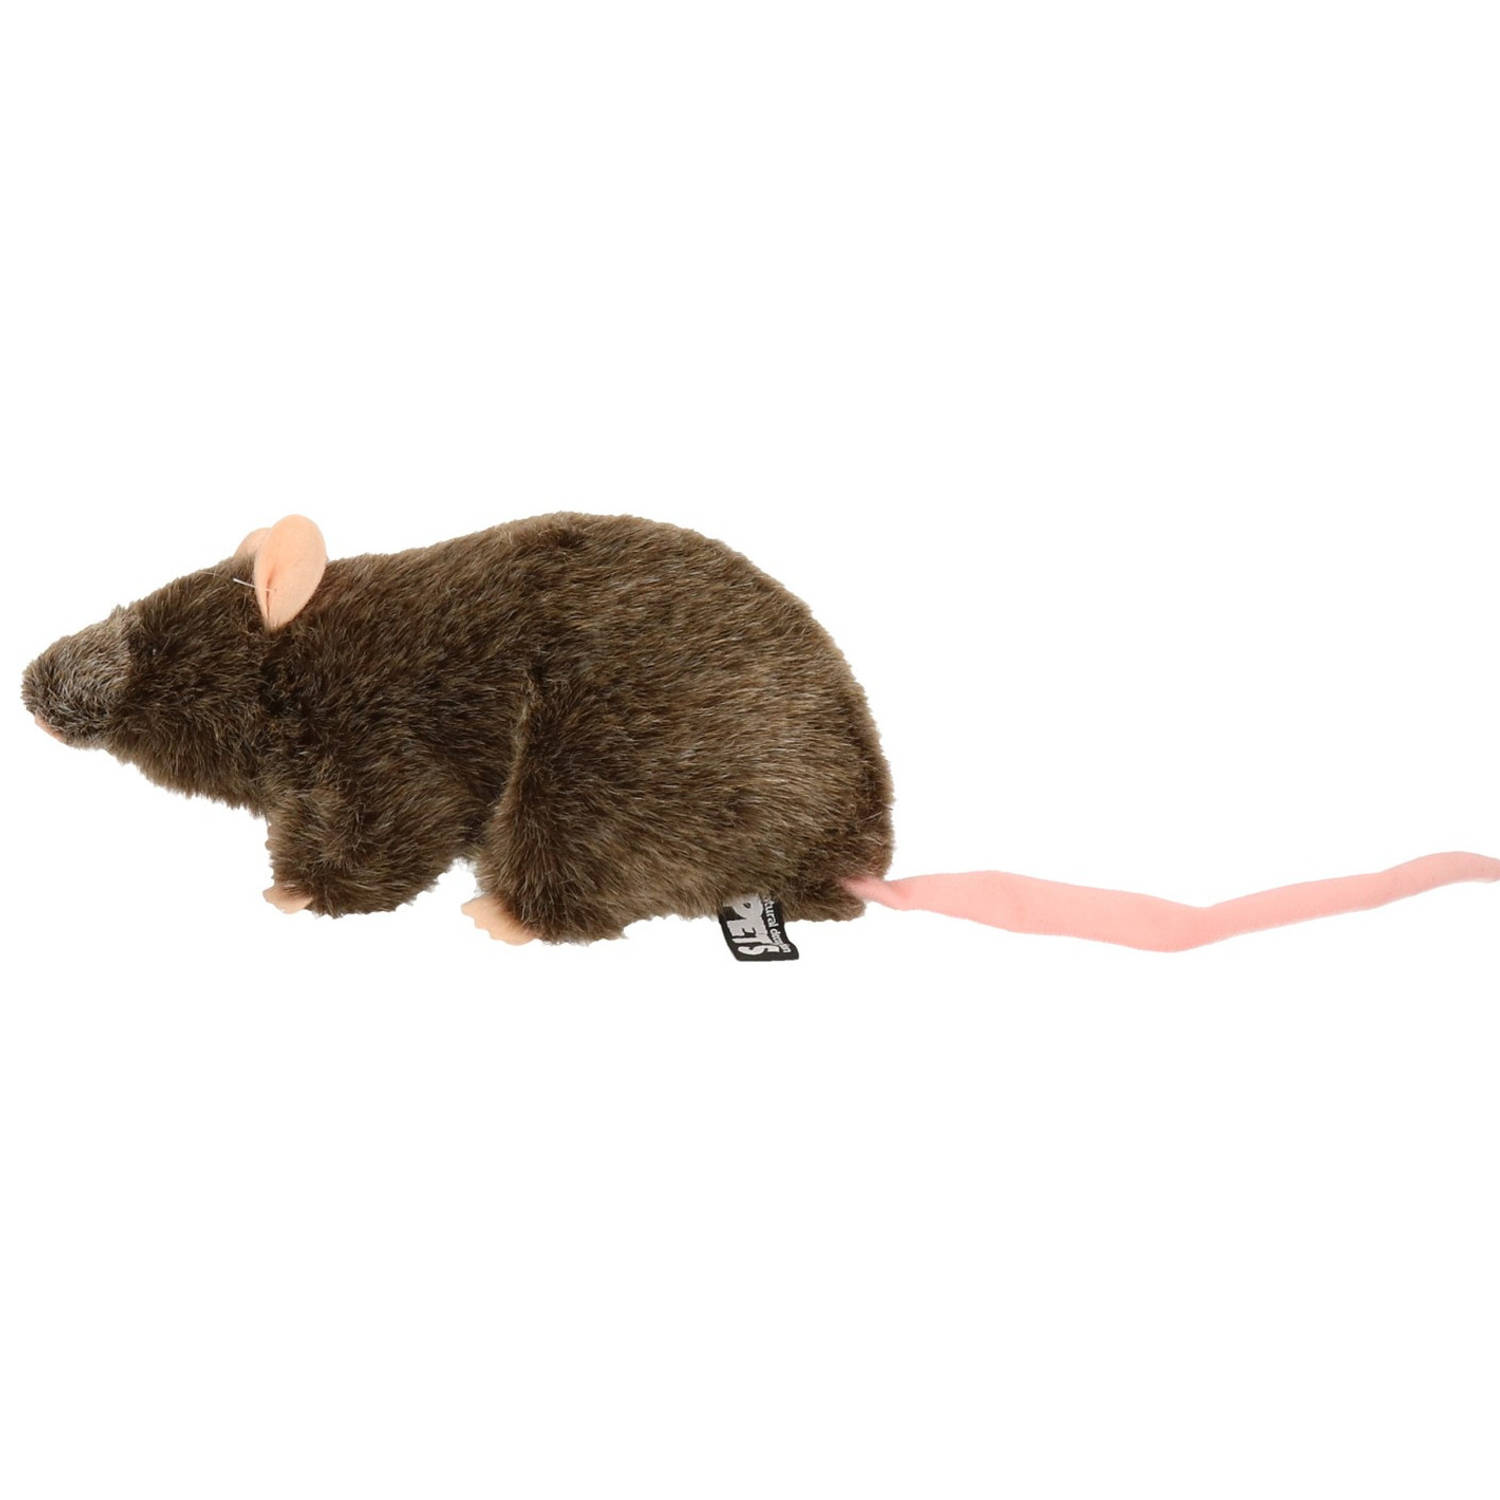 Pluche rat staand knuffel 22 cm speelgoed - Knuffel huisdieren |